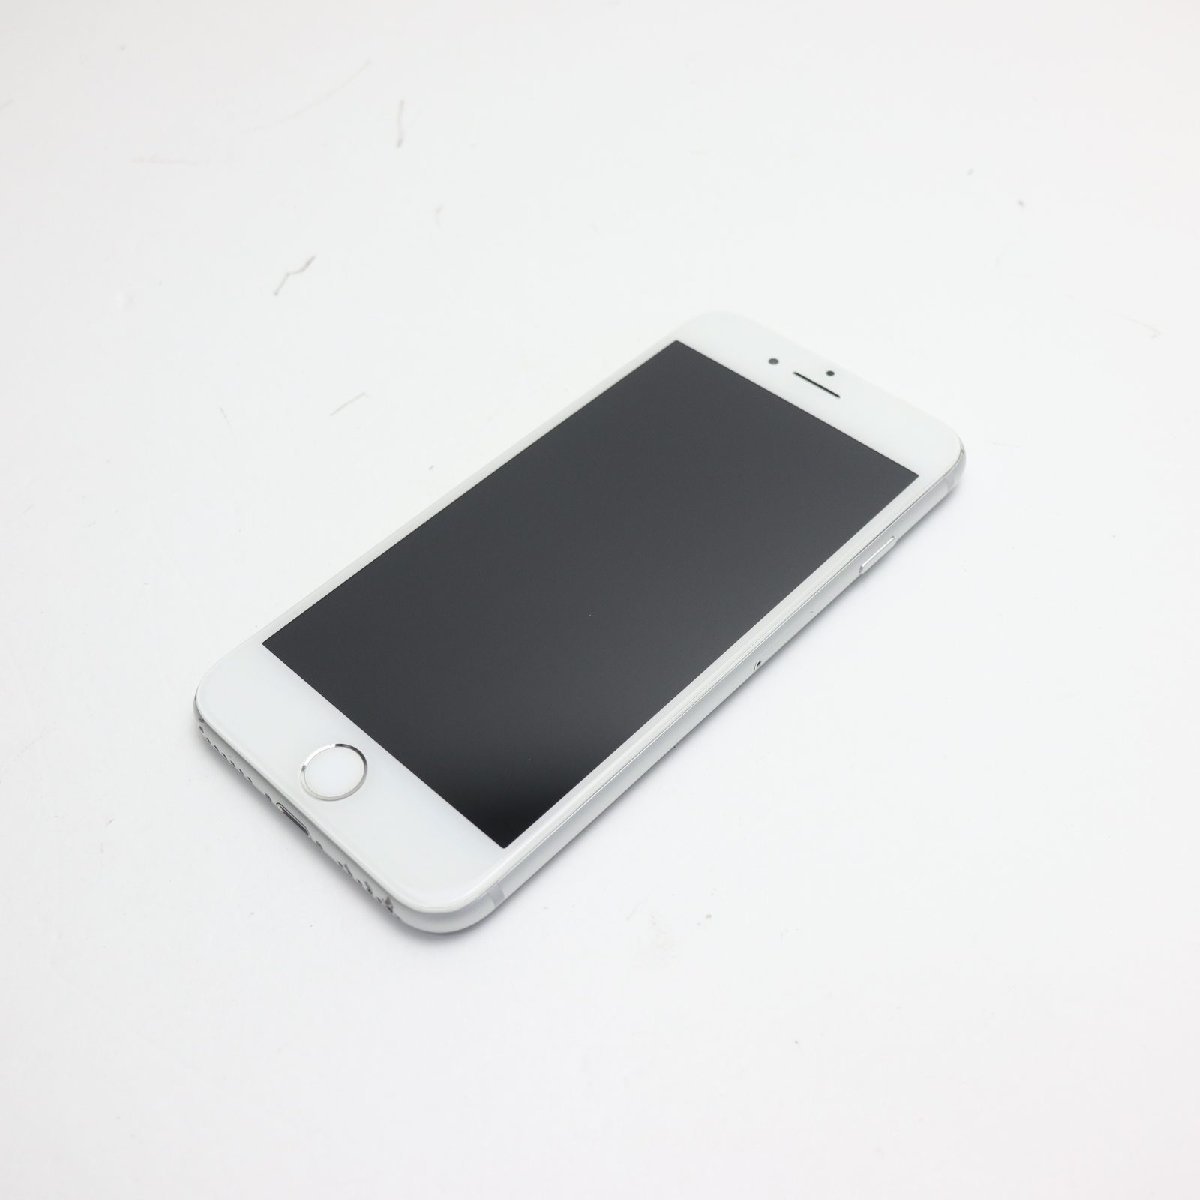 気質アップ 美品 SIMフリー iPhone8 256GB シルバー 即日発送 スマホ